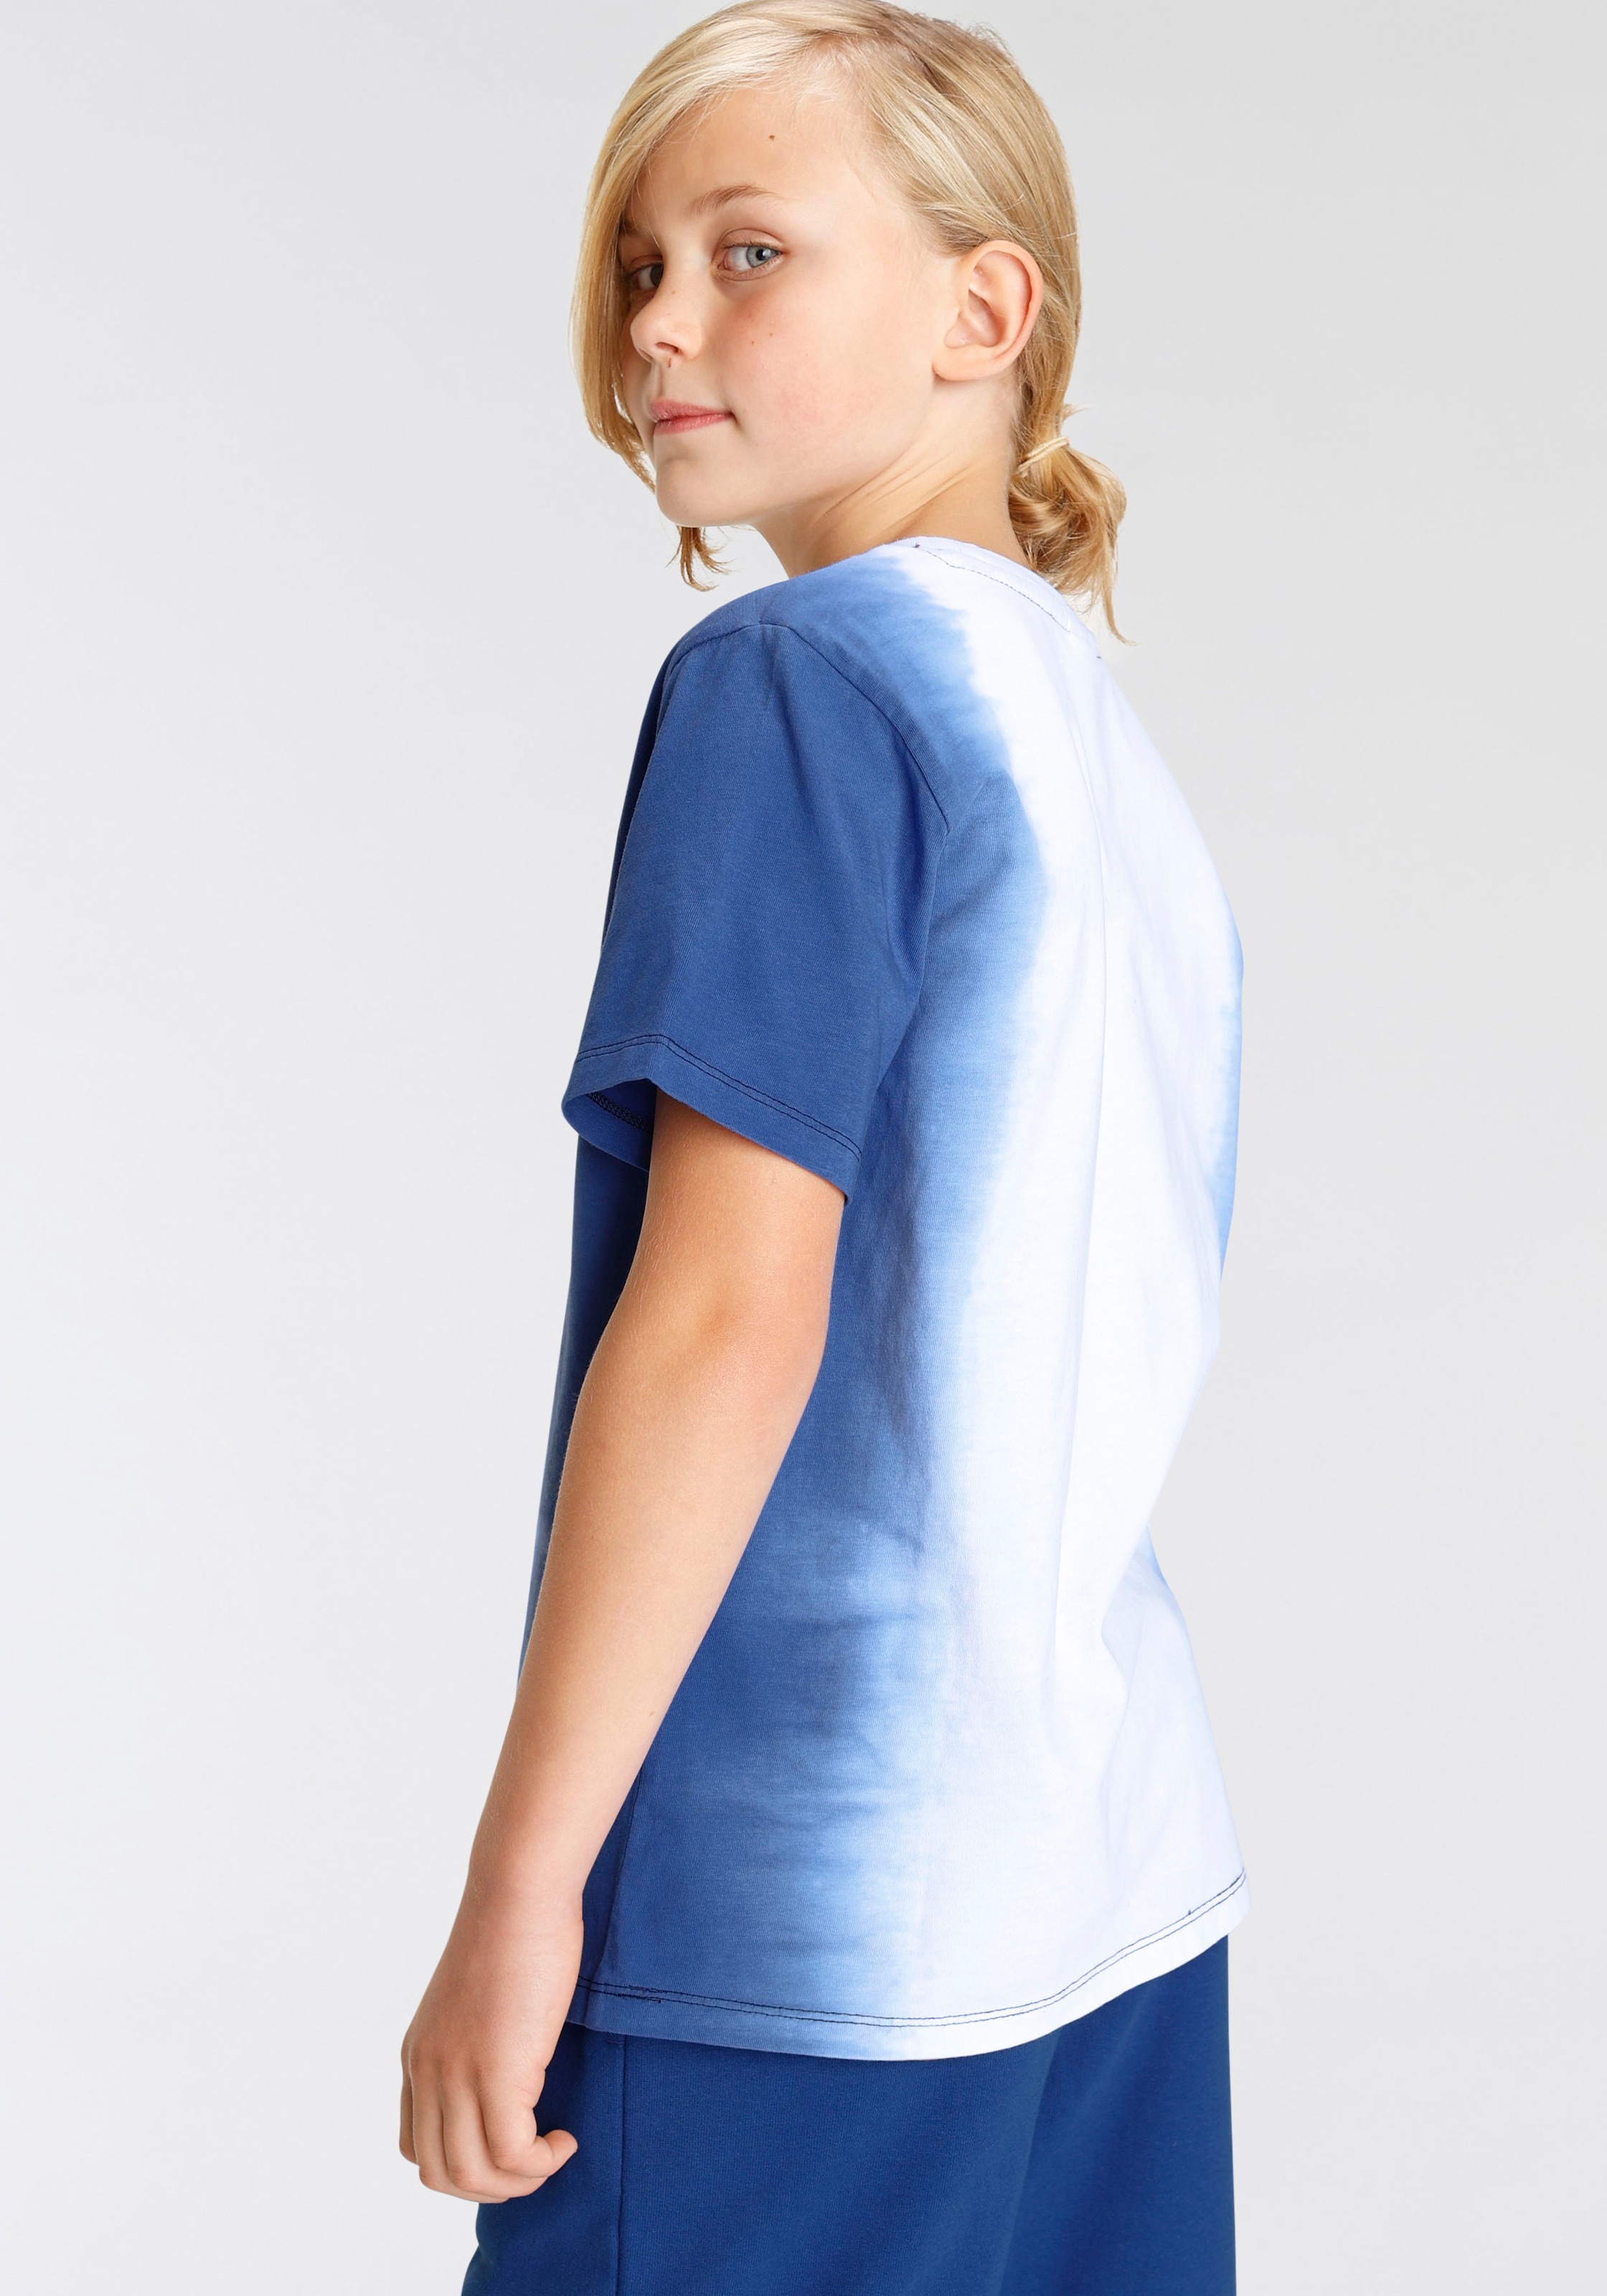 Trendige versandkostenfrei Farbverlauf mit T-Shirt - Chiemsee und bestellen Logodruck Mindestbestellwert Dye«, ohne »Dip coolem